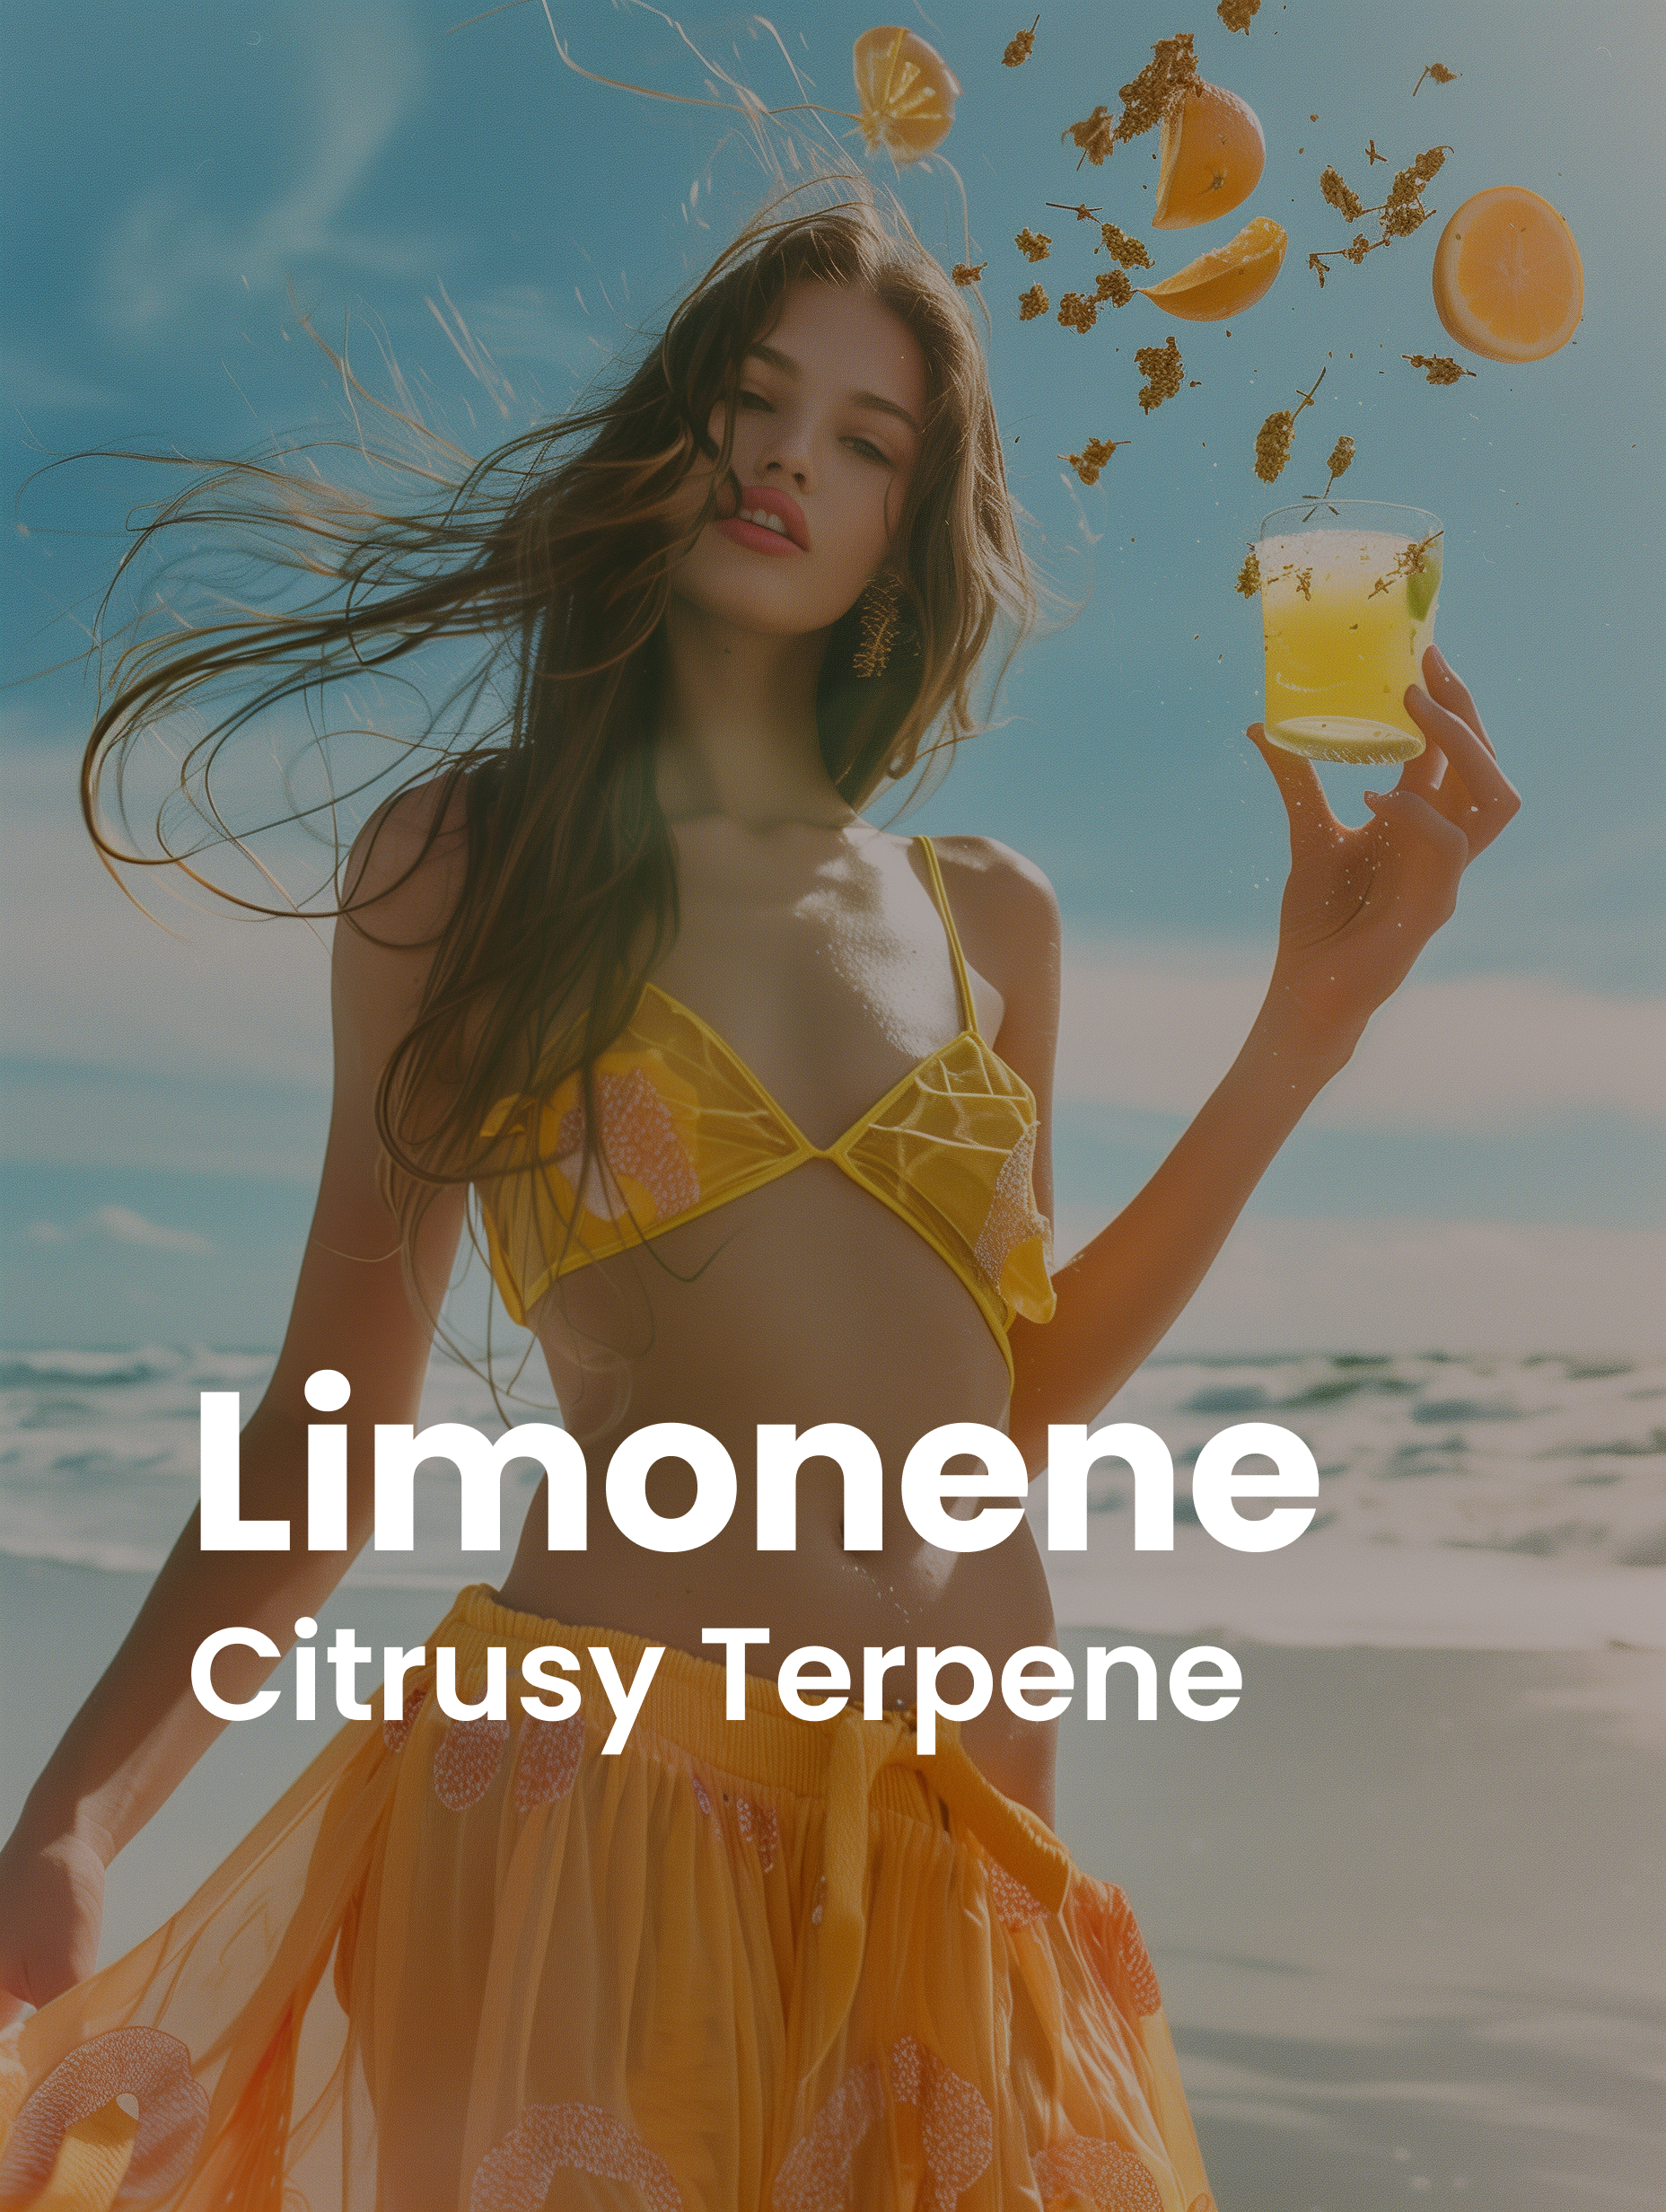 Limonene Citrusy Terpene